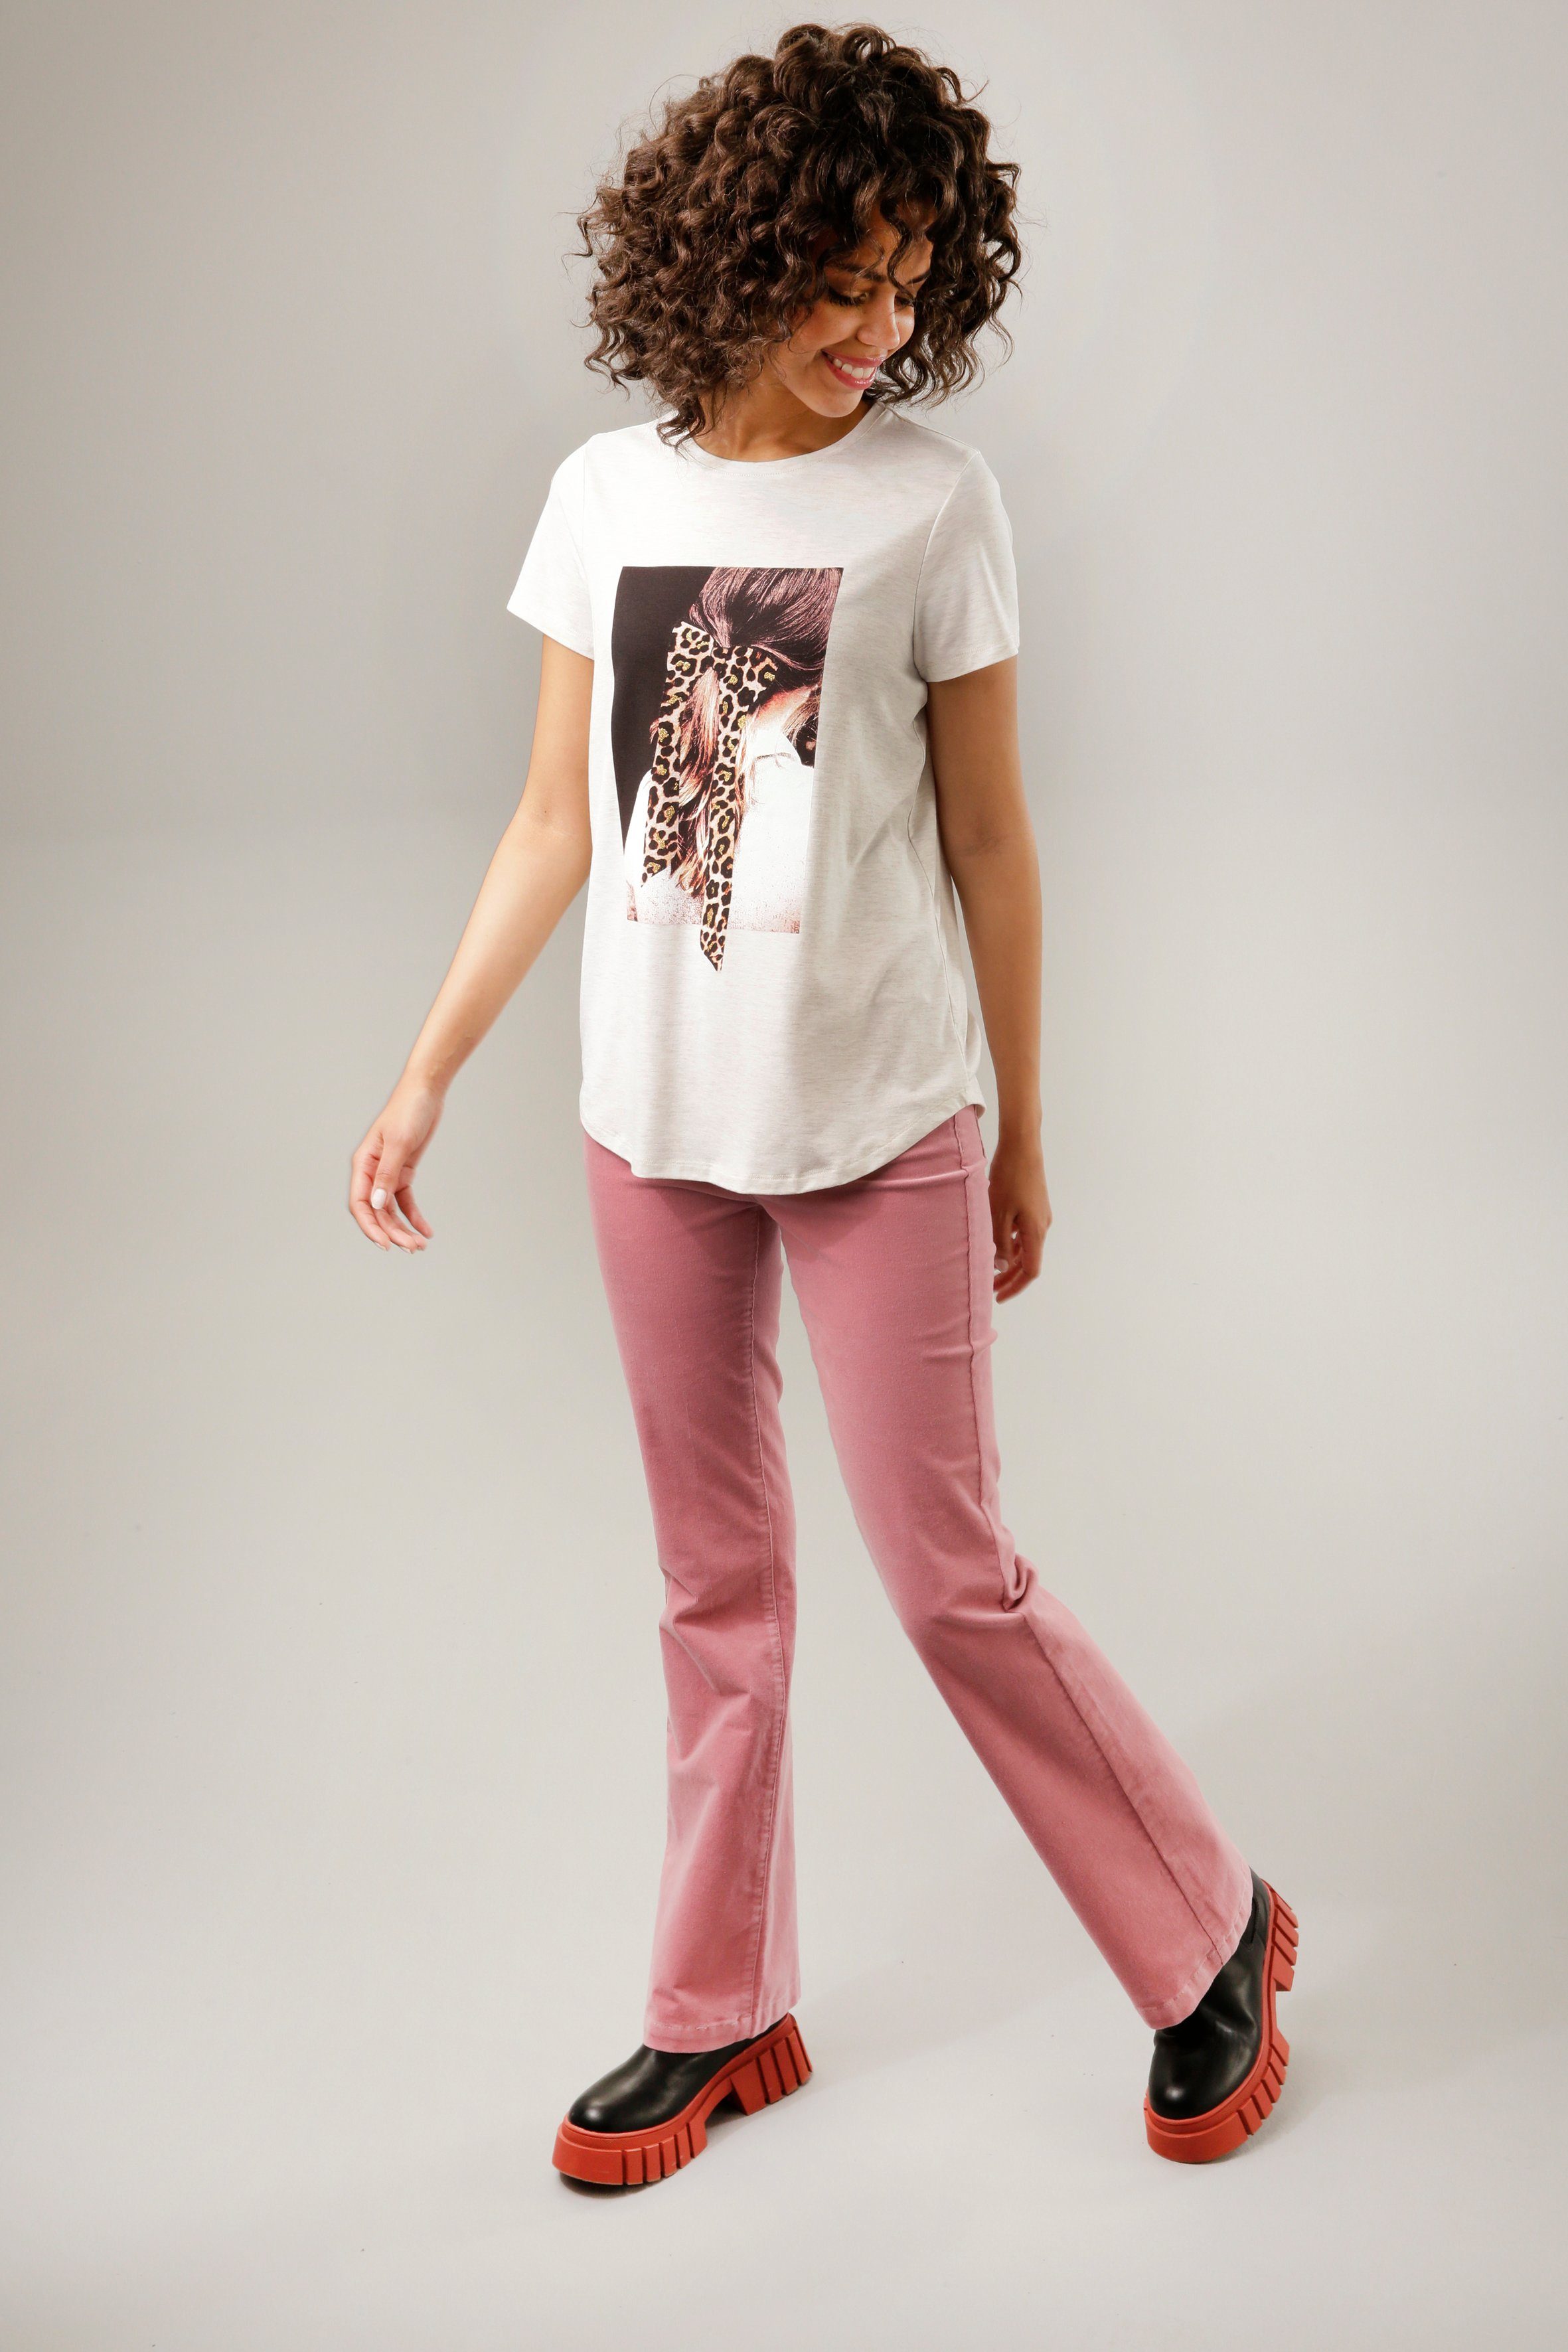 Glitzer natur-dunkelbraun-weiß-rosa-goldfarben Aniston CASUAL Frontdruck T-Shirt mit verziertem